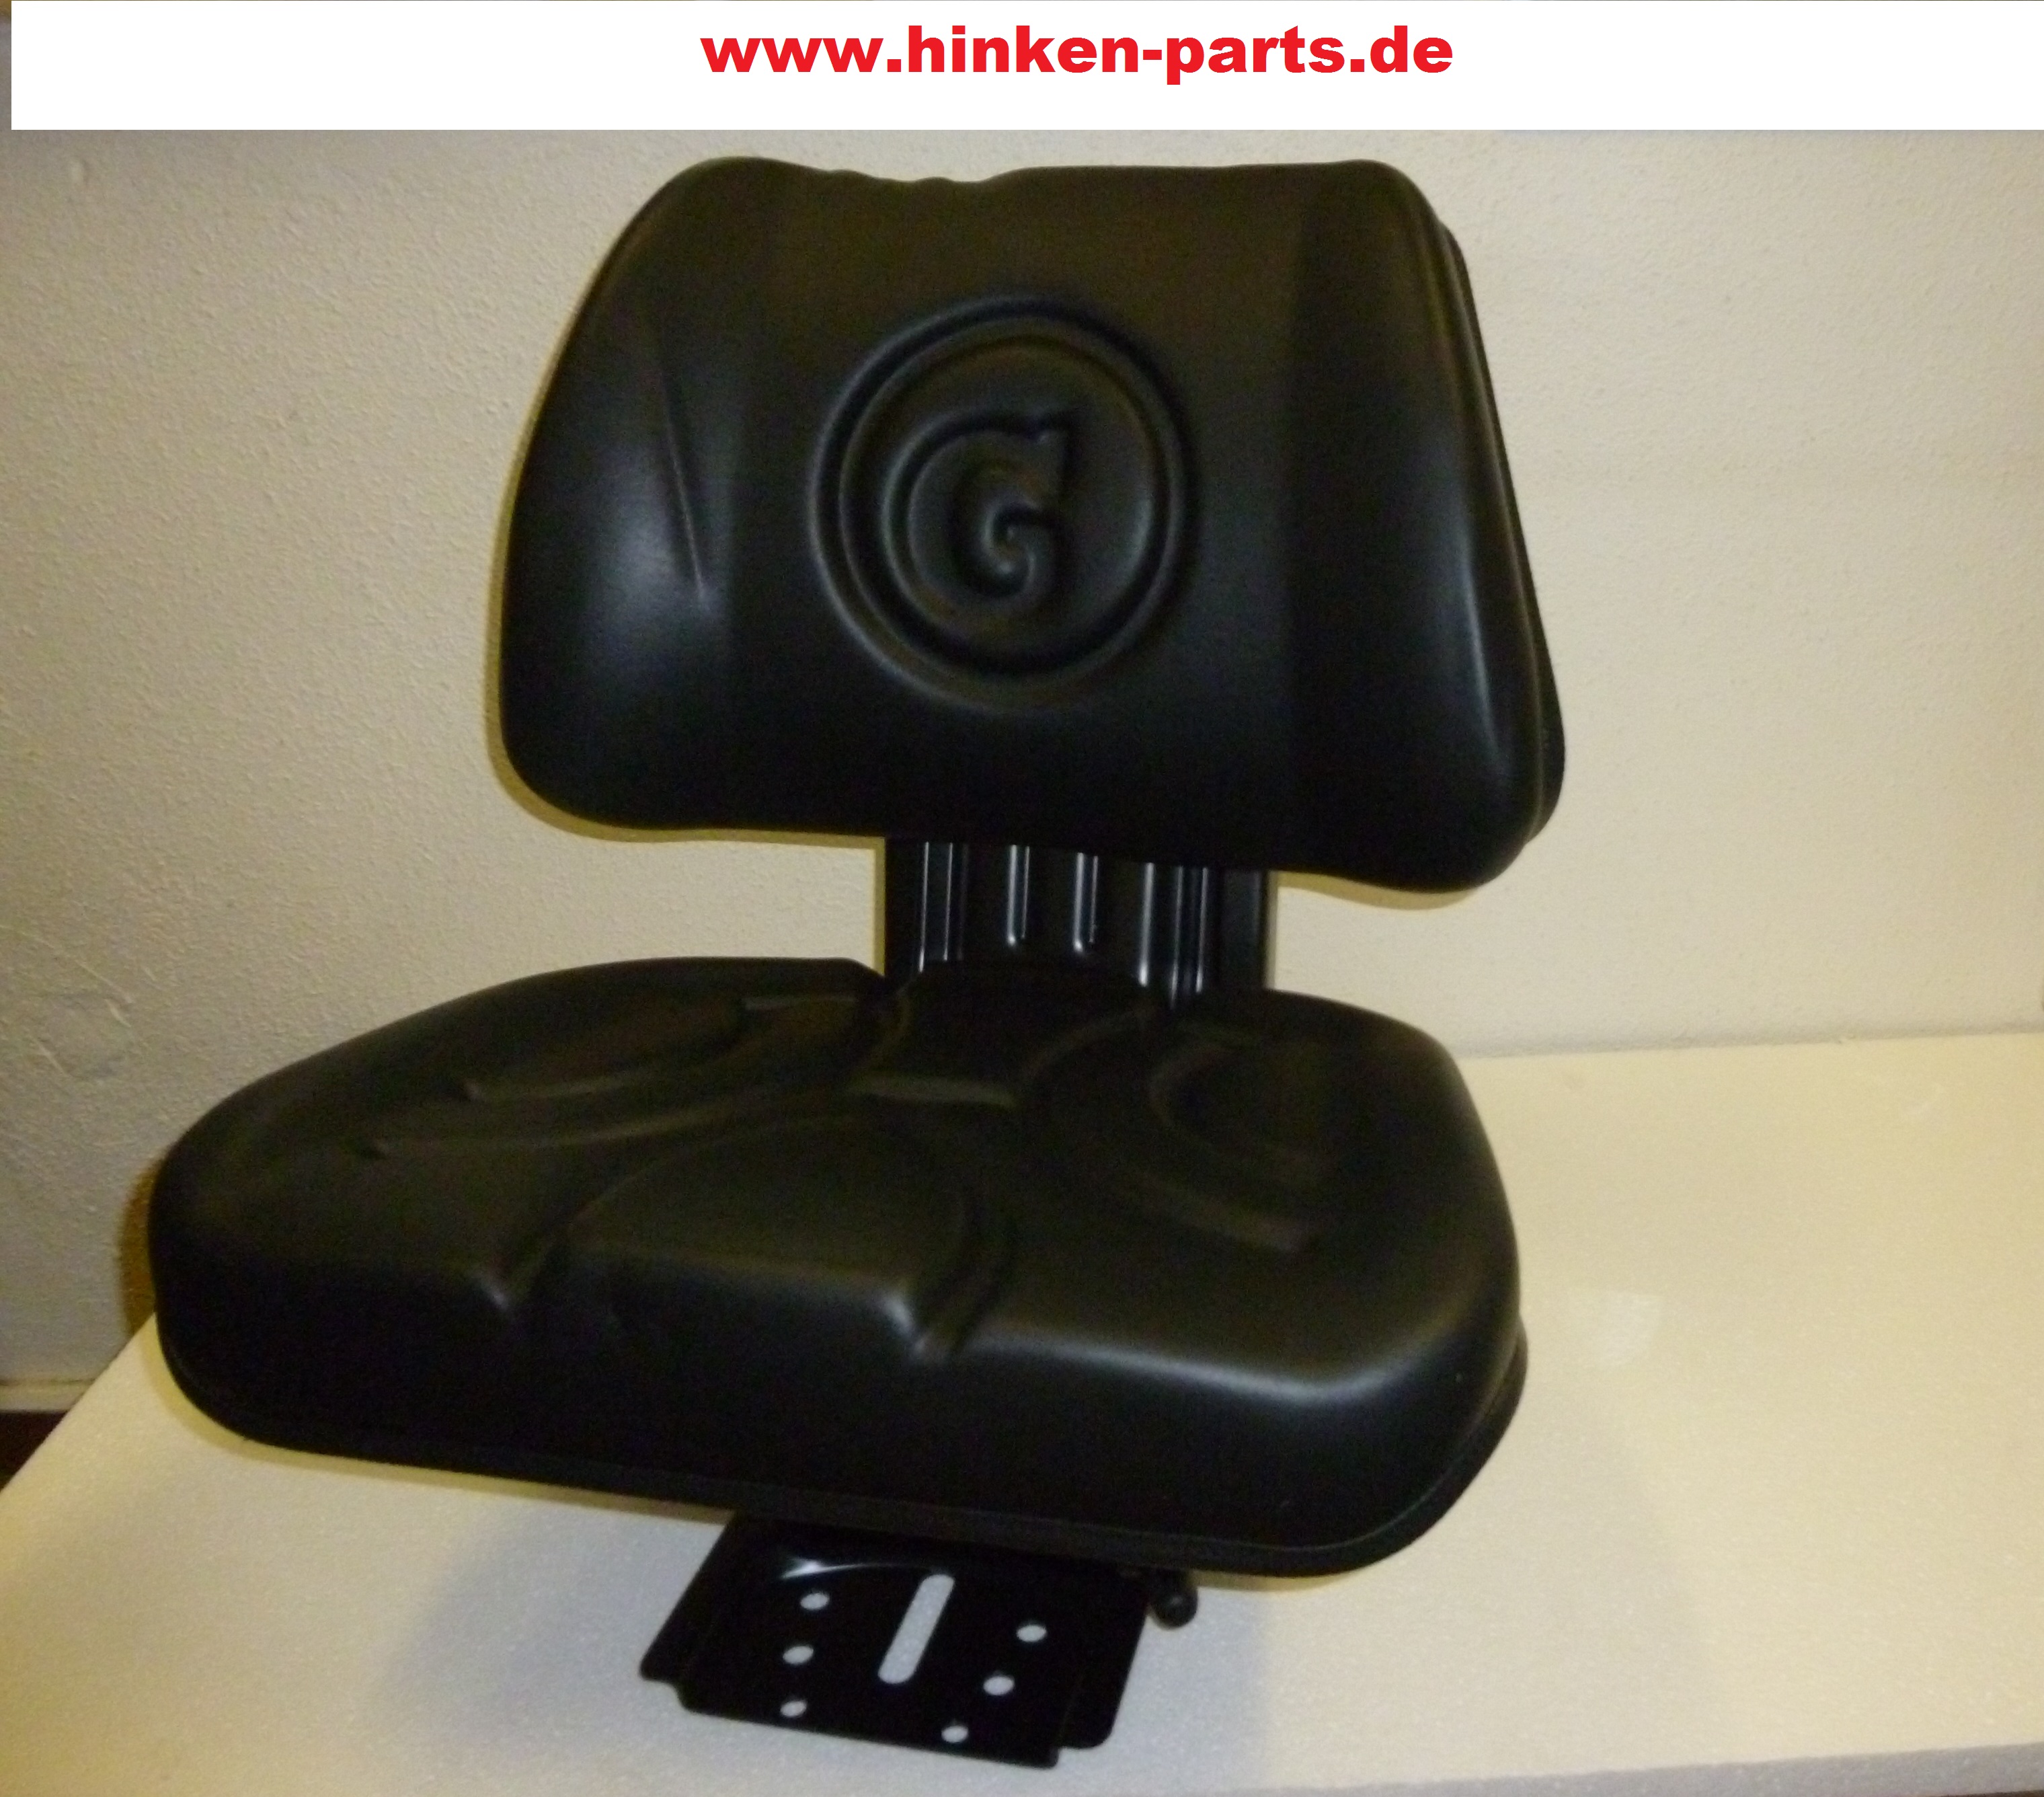 Hinken-Parts - Sitz für Schlepper Traktor Landmaschinen Stapler usw